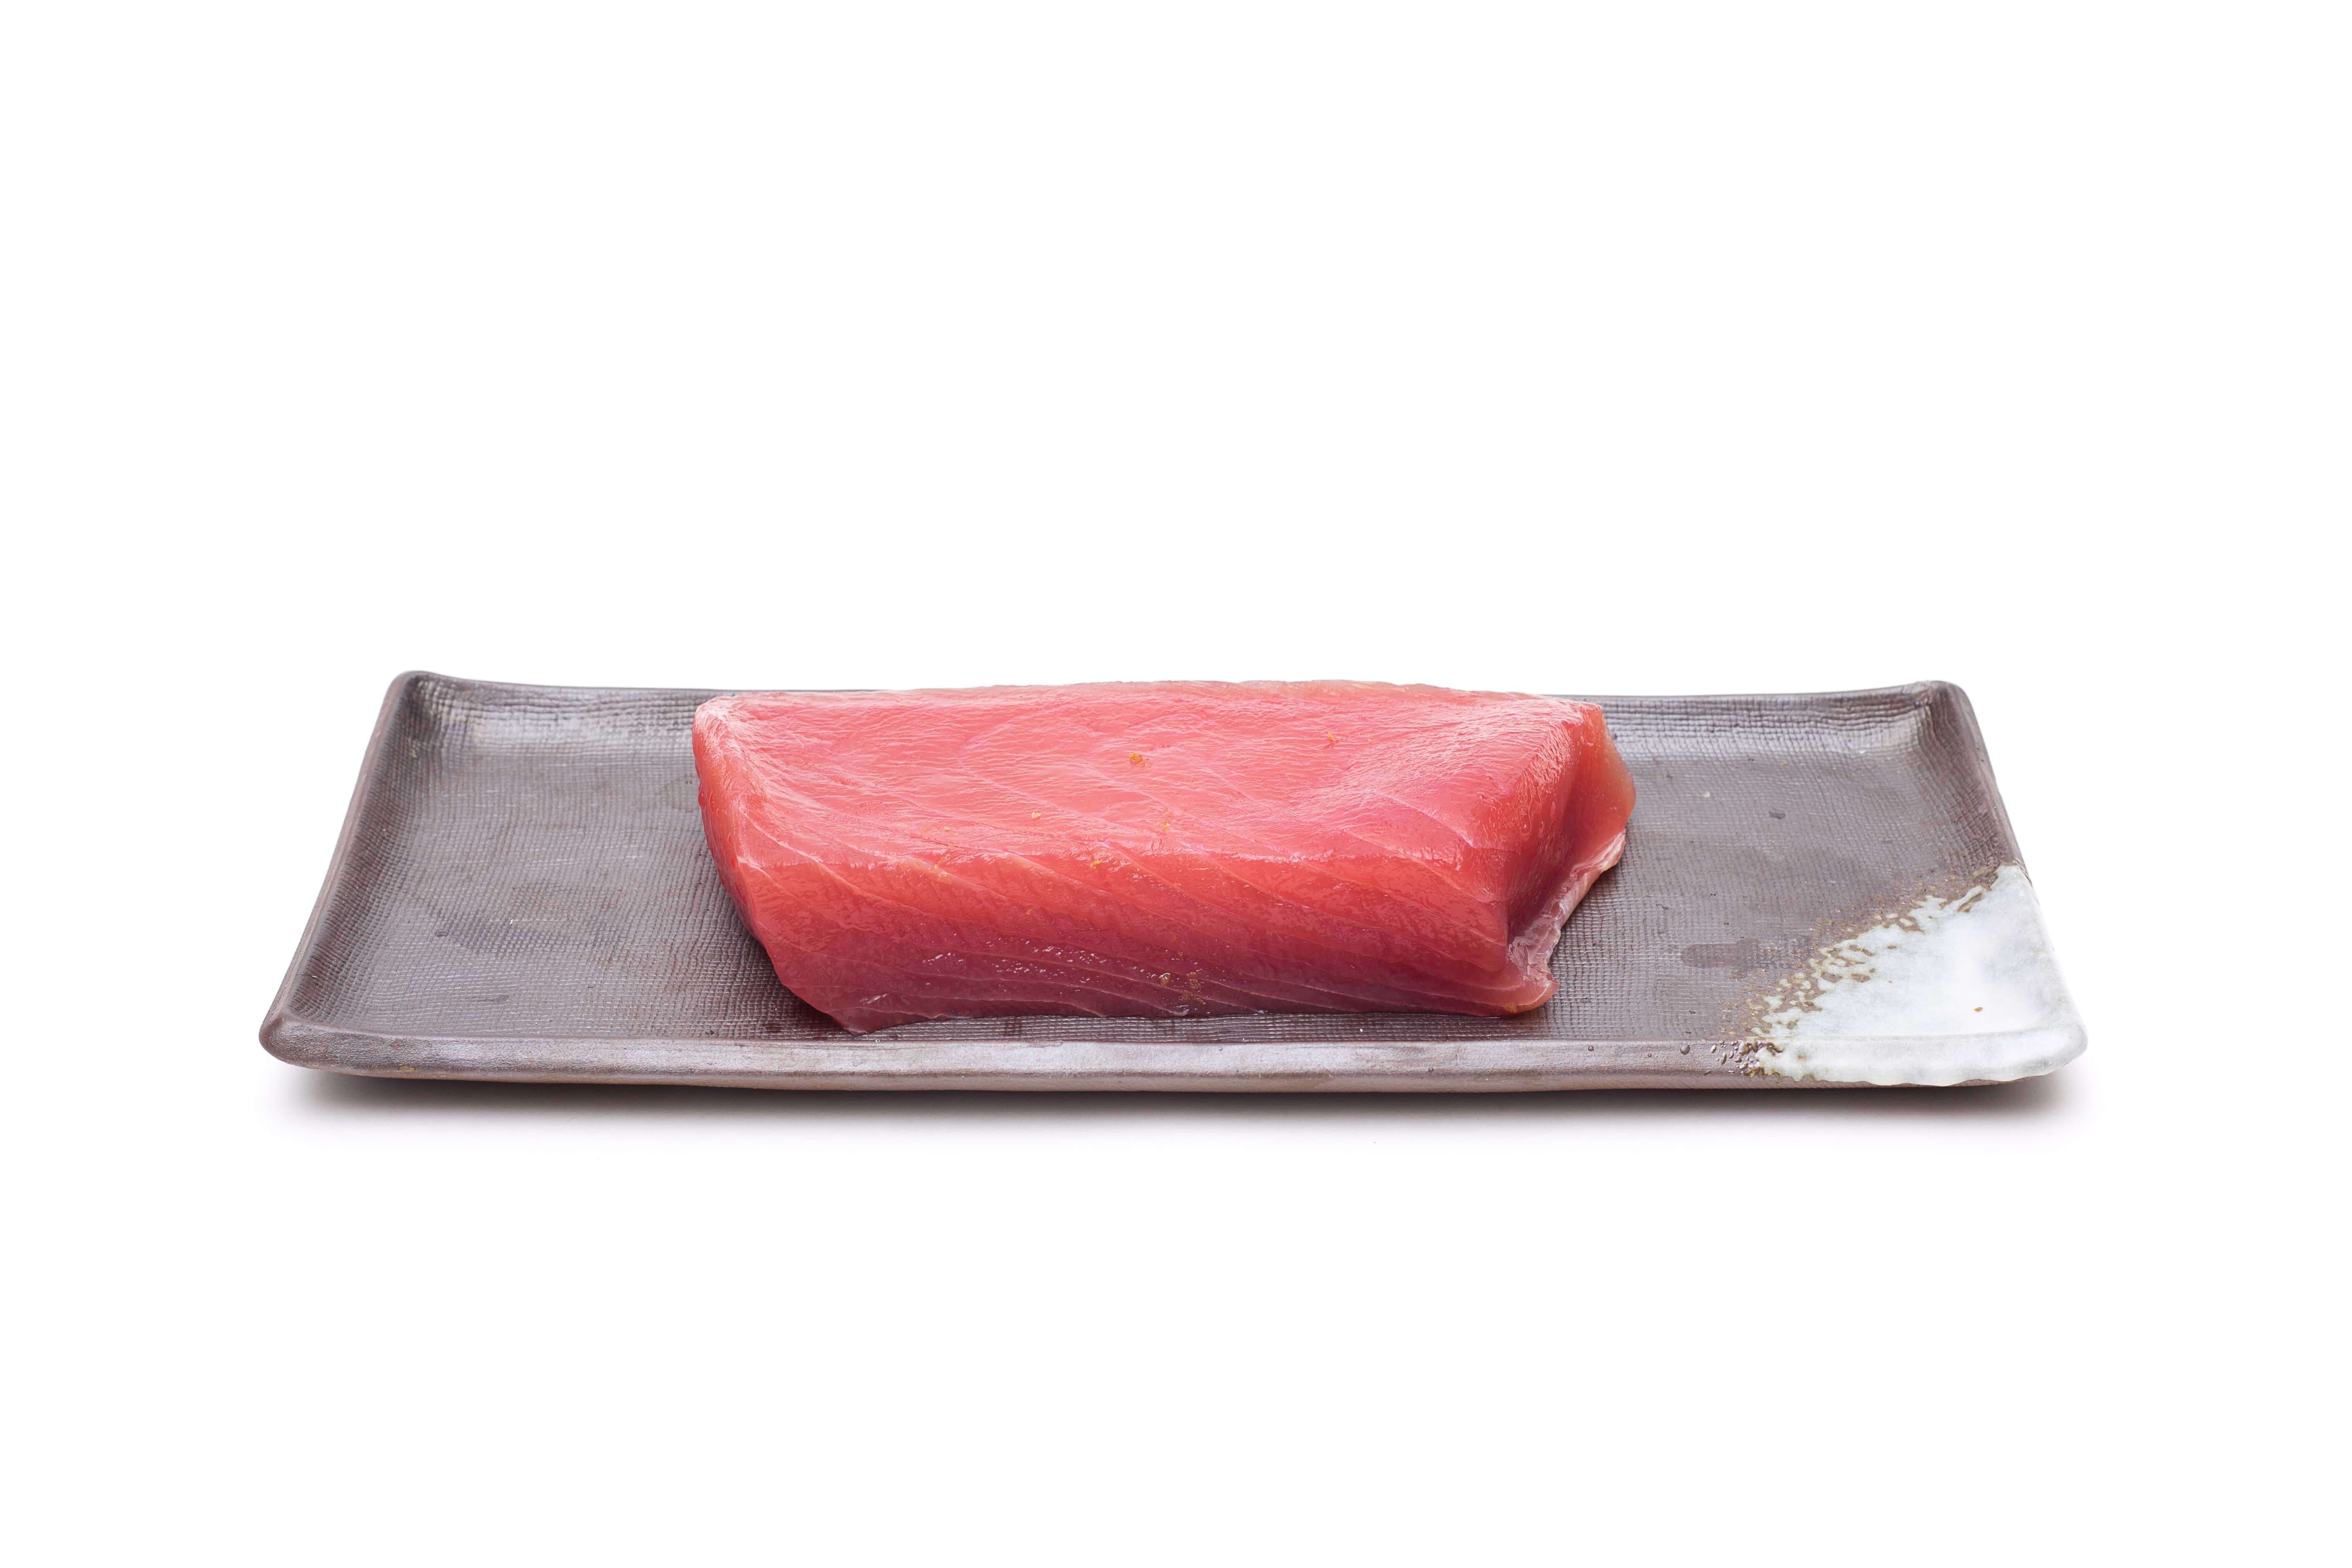 Frozen tuna supplier